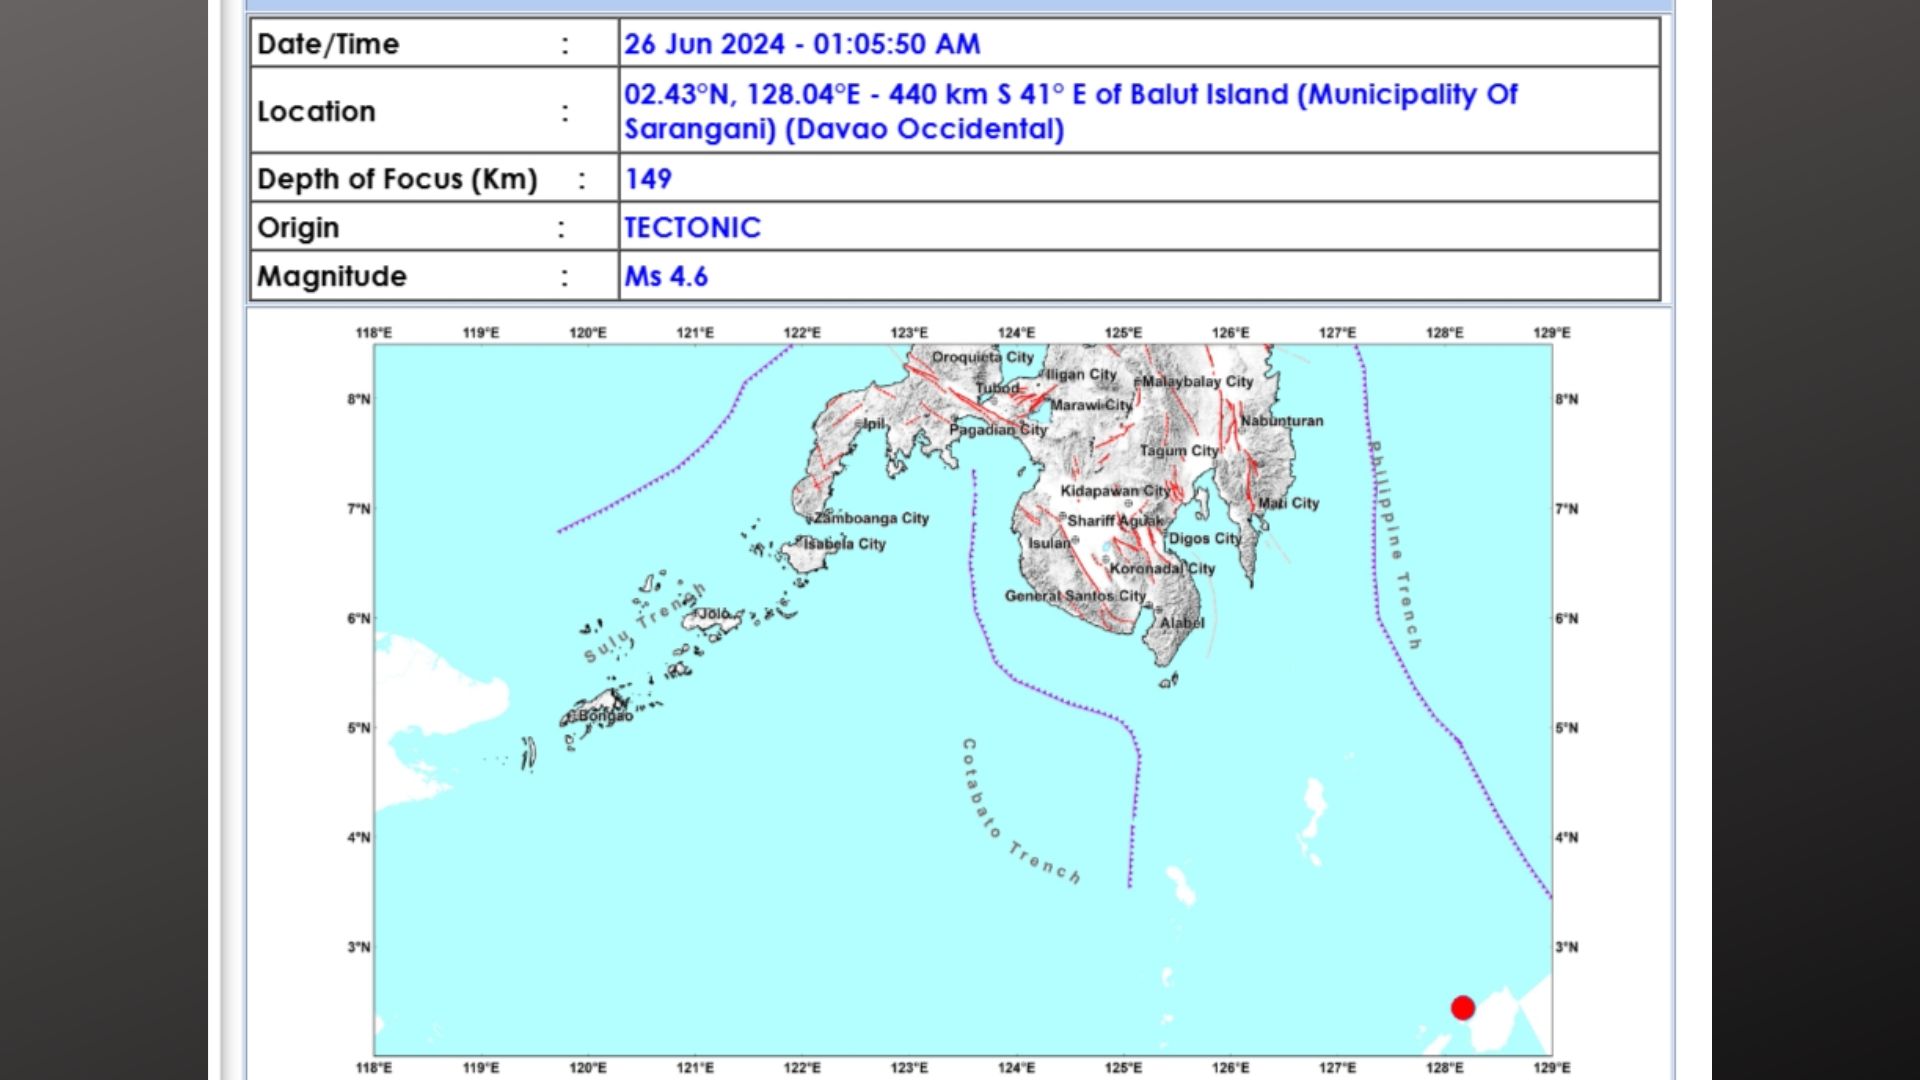 Davao Occidental niyanig ng magnitude 4.6 na lindol